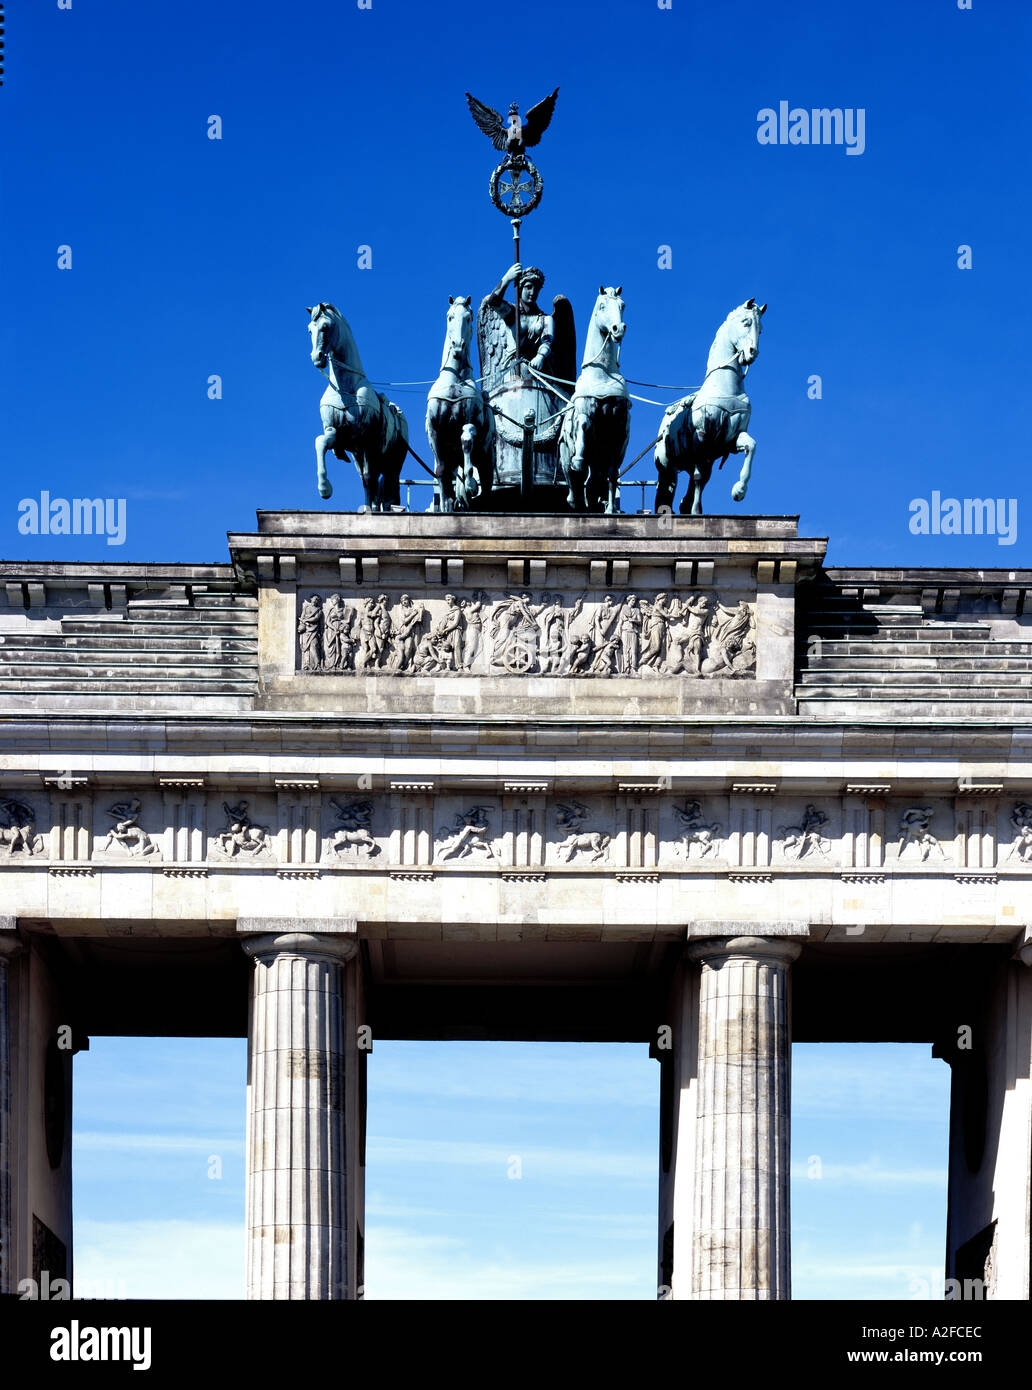 La Porta di Brandeburgo prima costruzione classica a Berlino 1788 - 1791. Architetto: Karl Gotthard Langhans Foto Stock